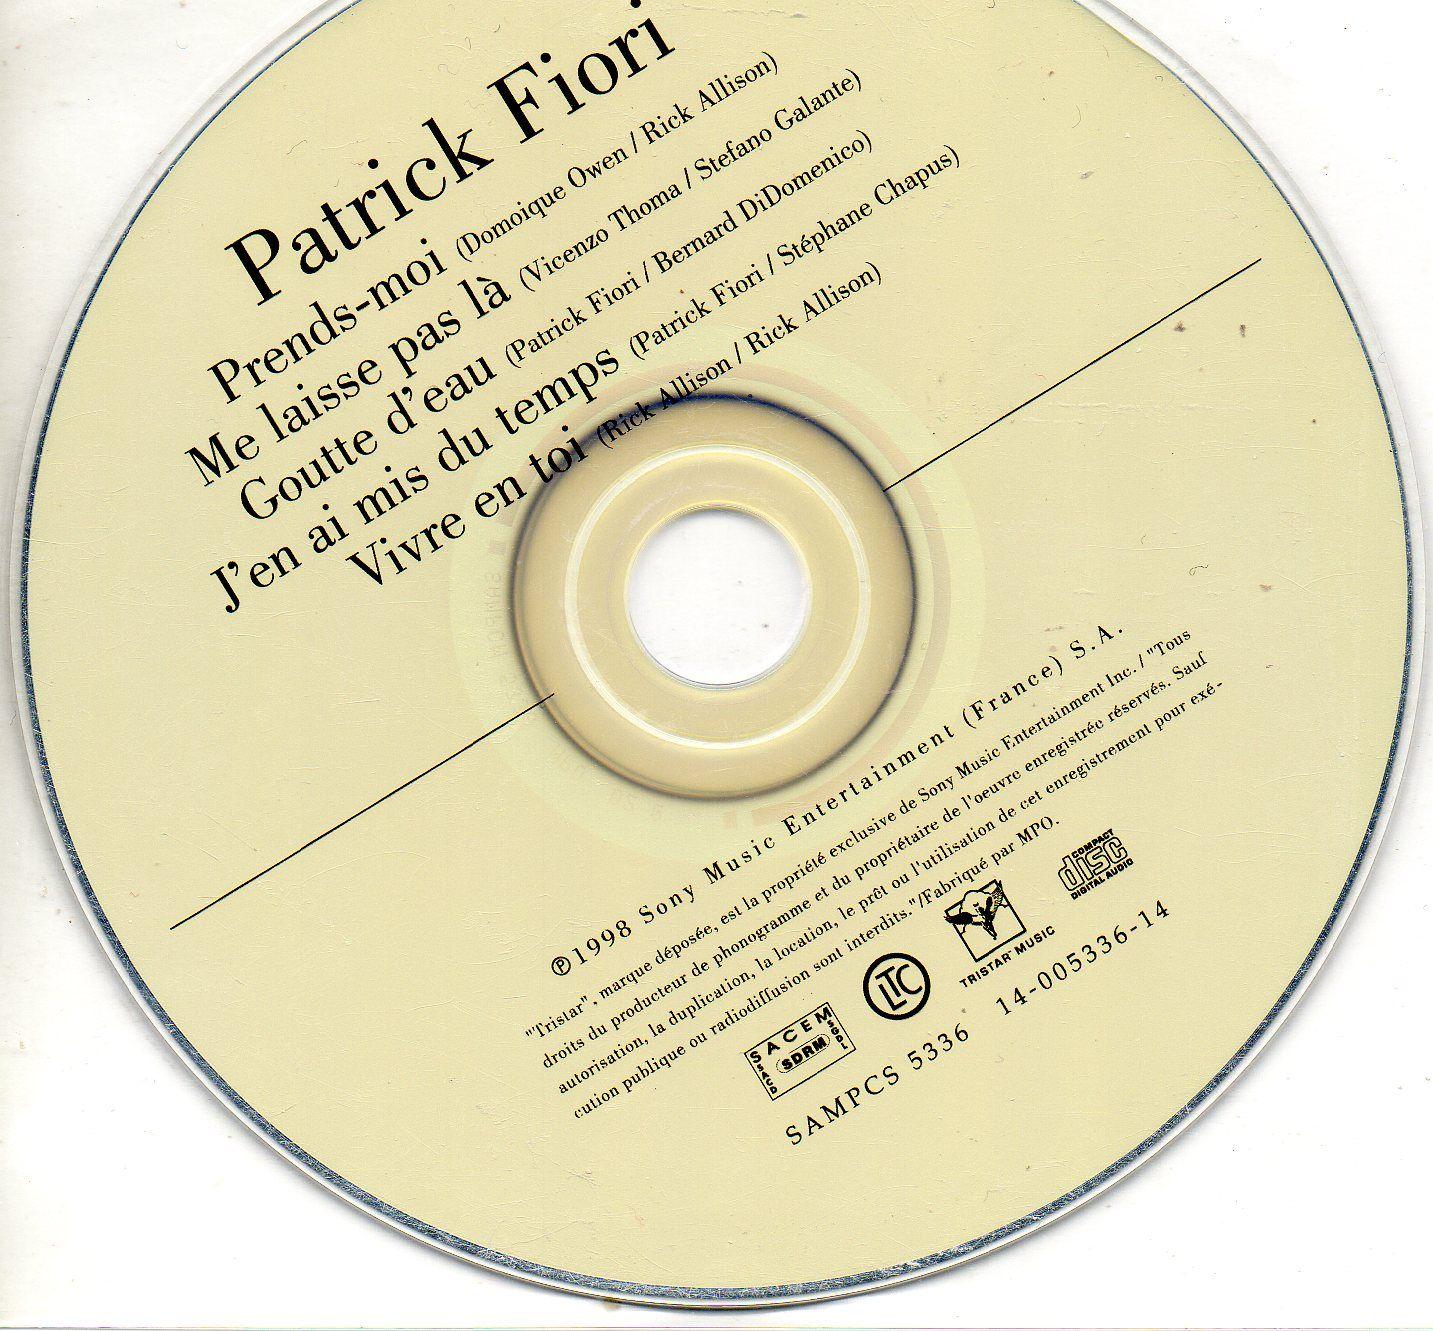 Fiori, Patrick - Prends-Moi -  Music